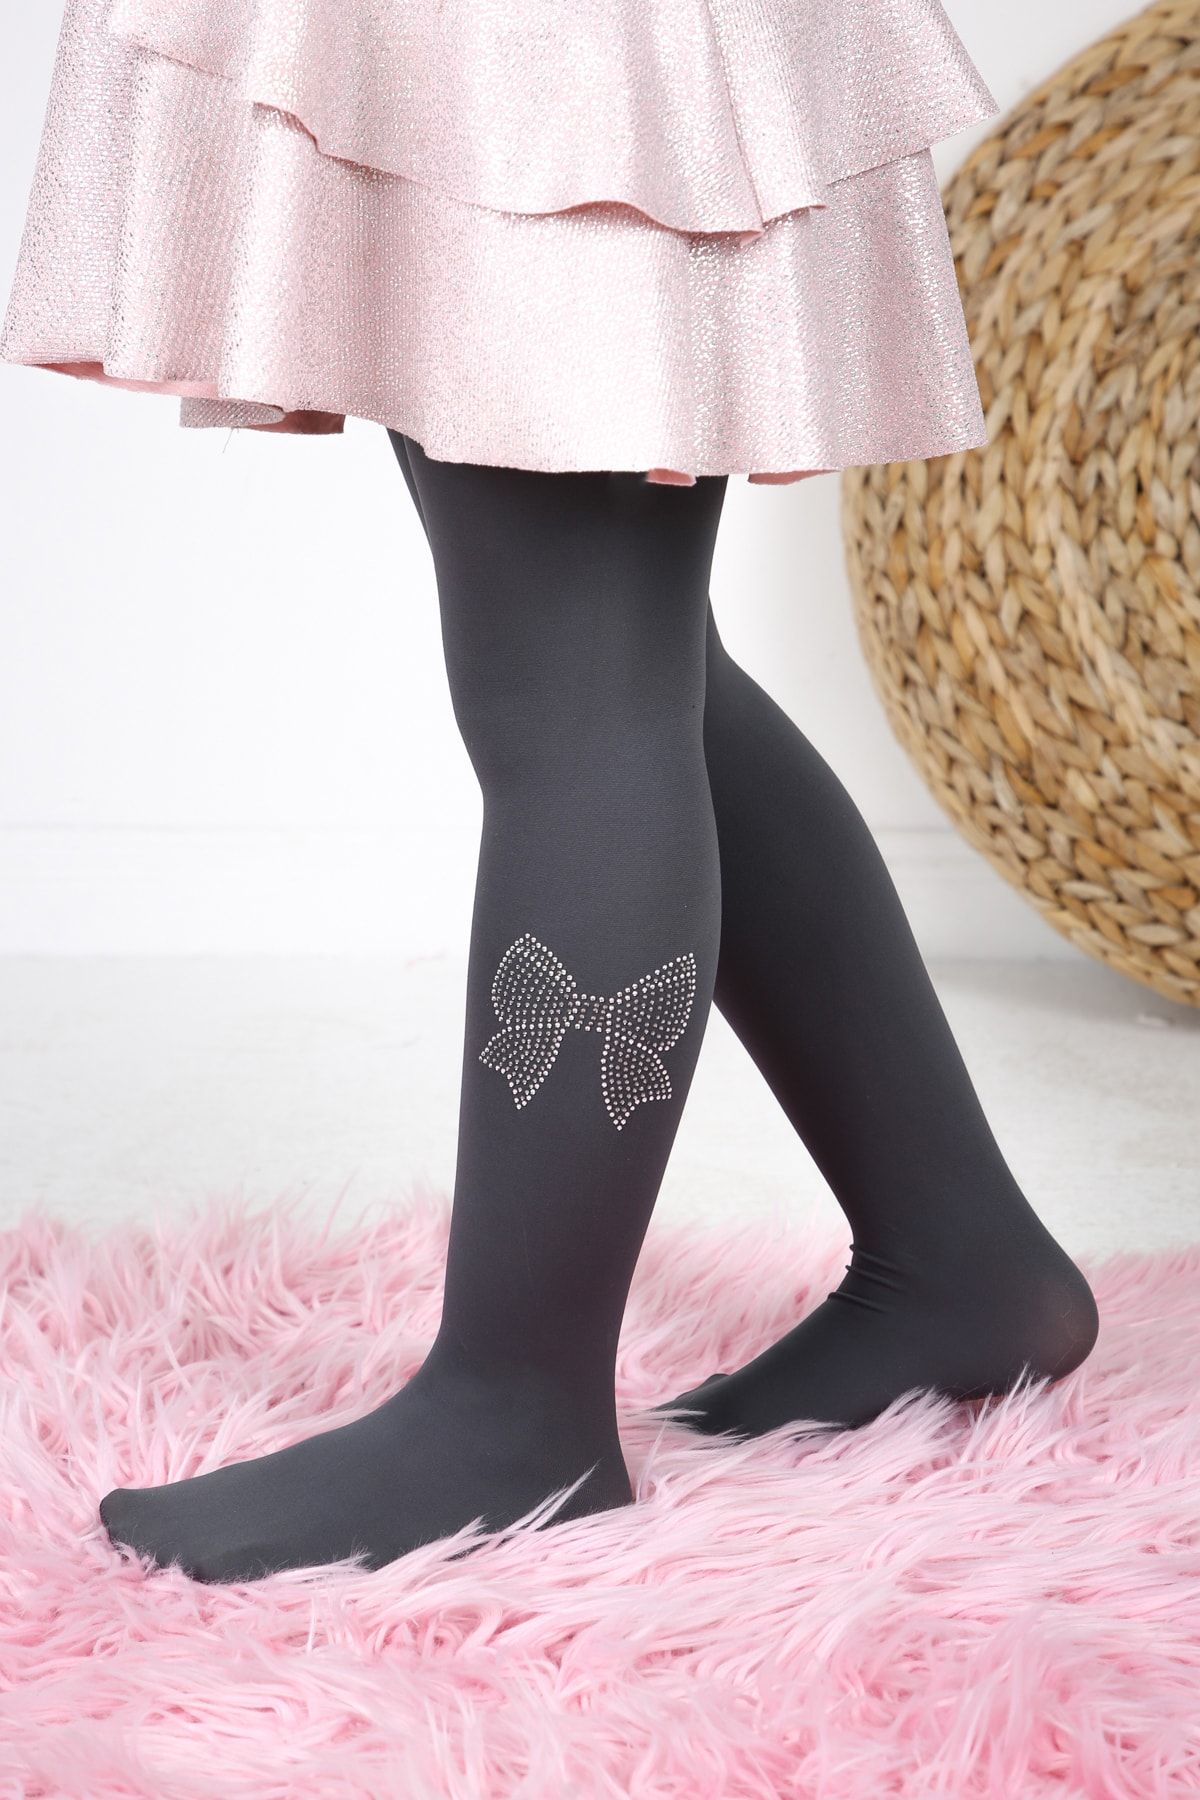 BUONUMARE Kız Çocuk Fiyonk Desen Taş Baskılı Füme Renk Muz Külotlu Çorap 1 Adet